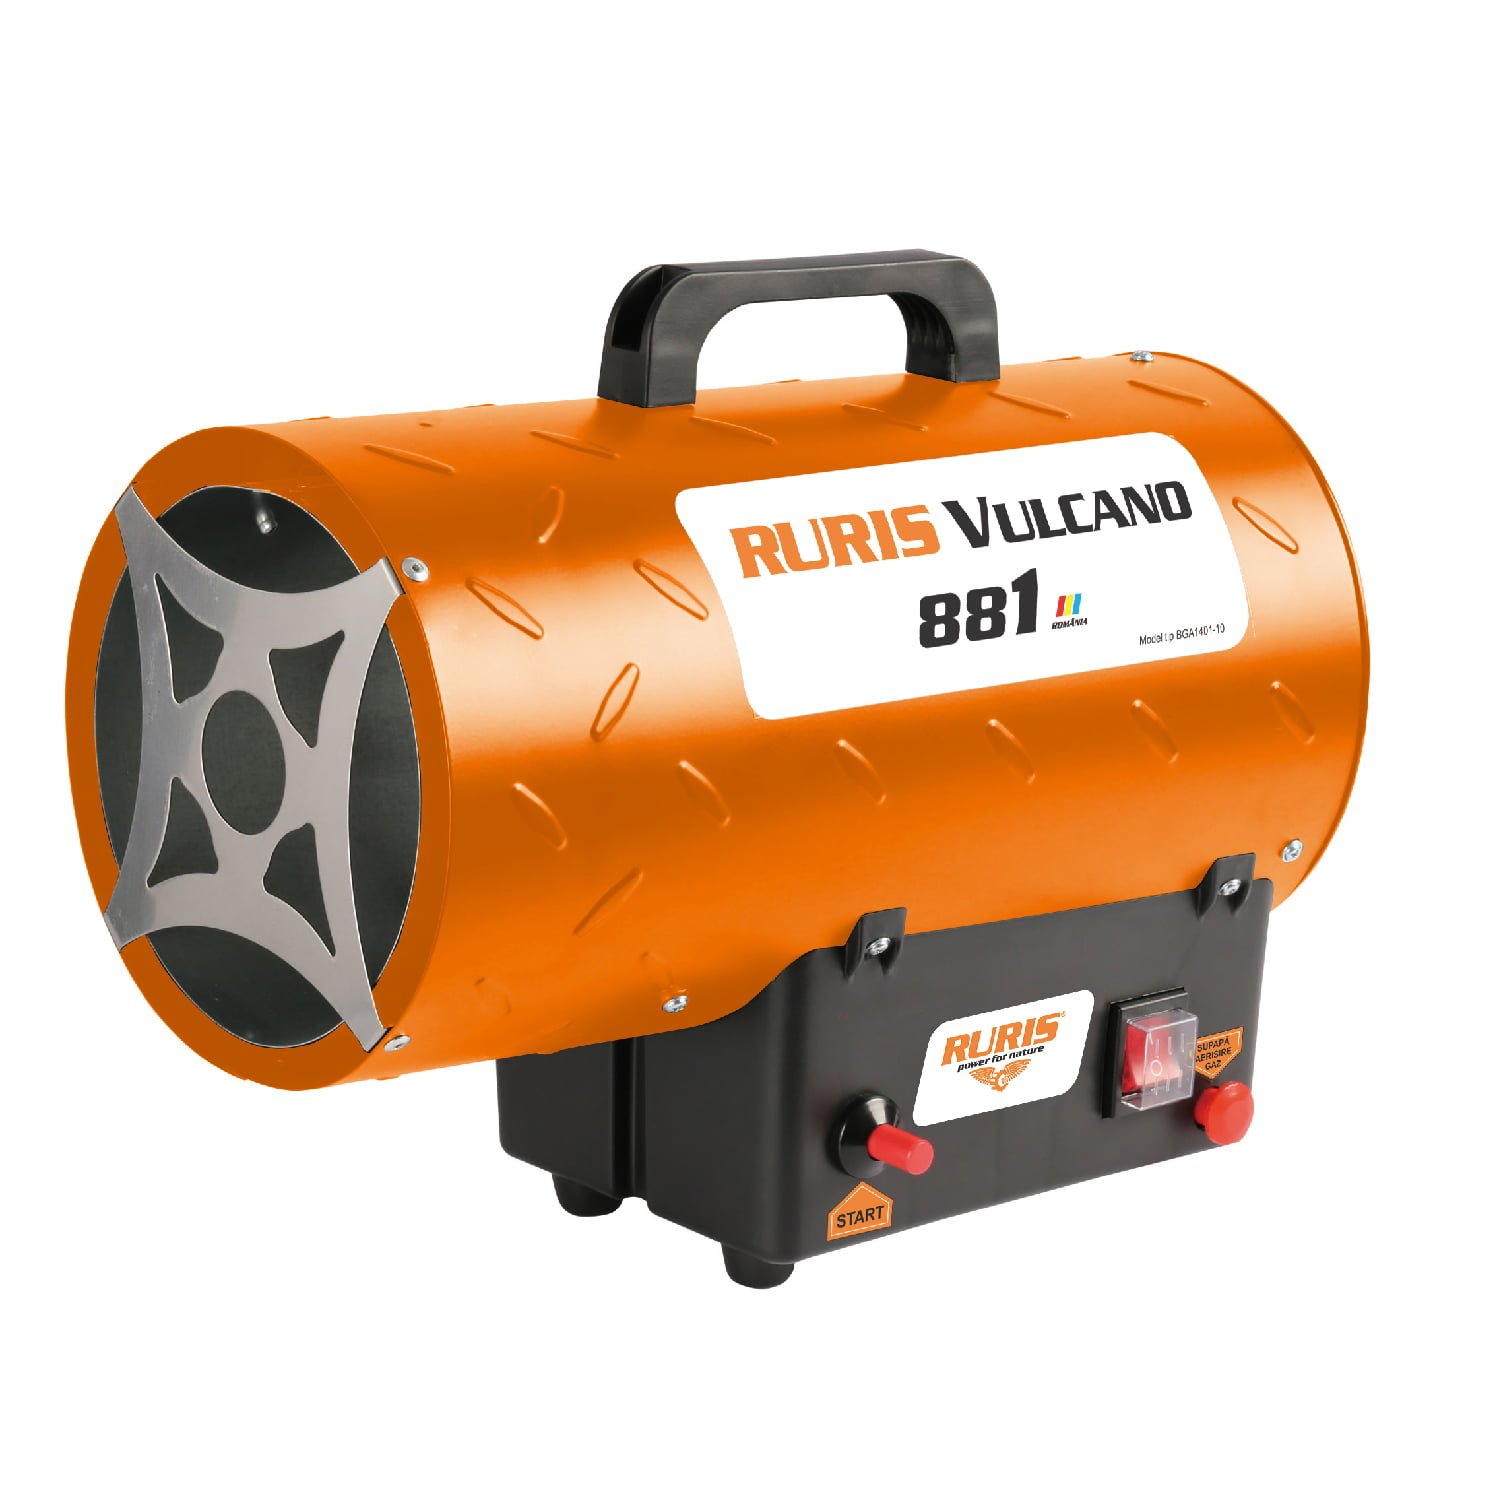 RURIS grijalica kalolifer plinski top Vulcano 881 - masineialati.ba -  Profesionalni i hobi alati i mašine